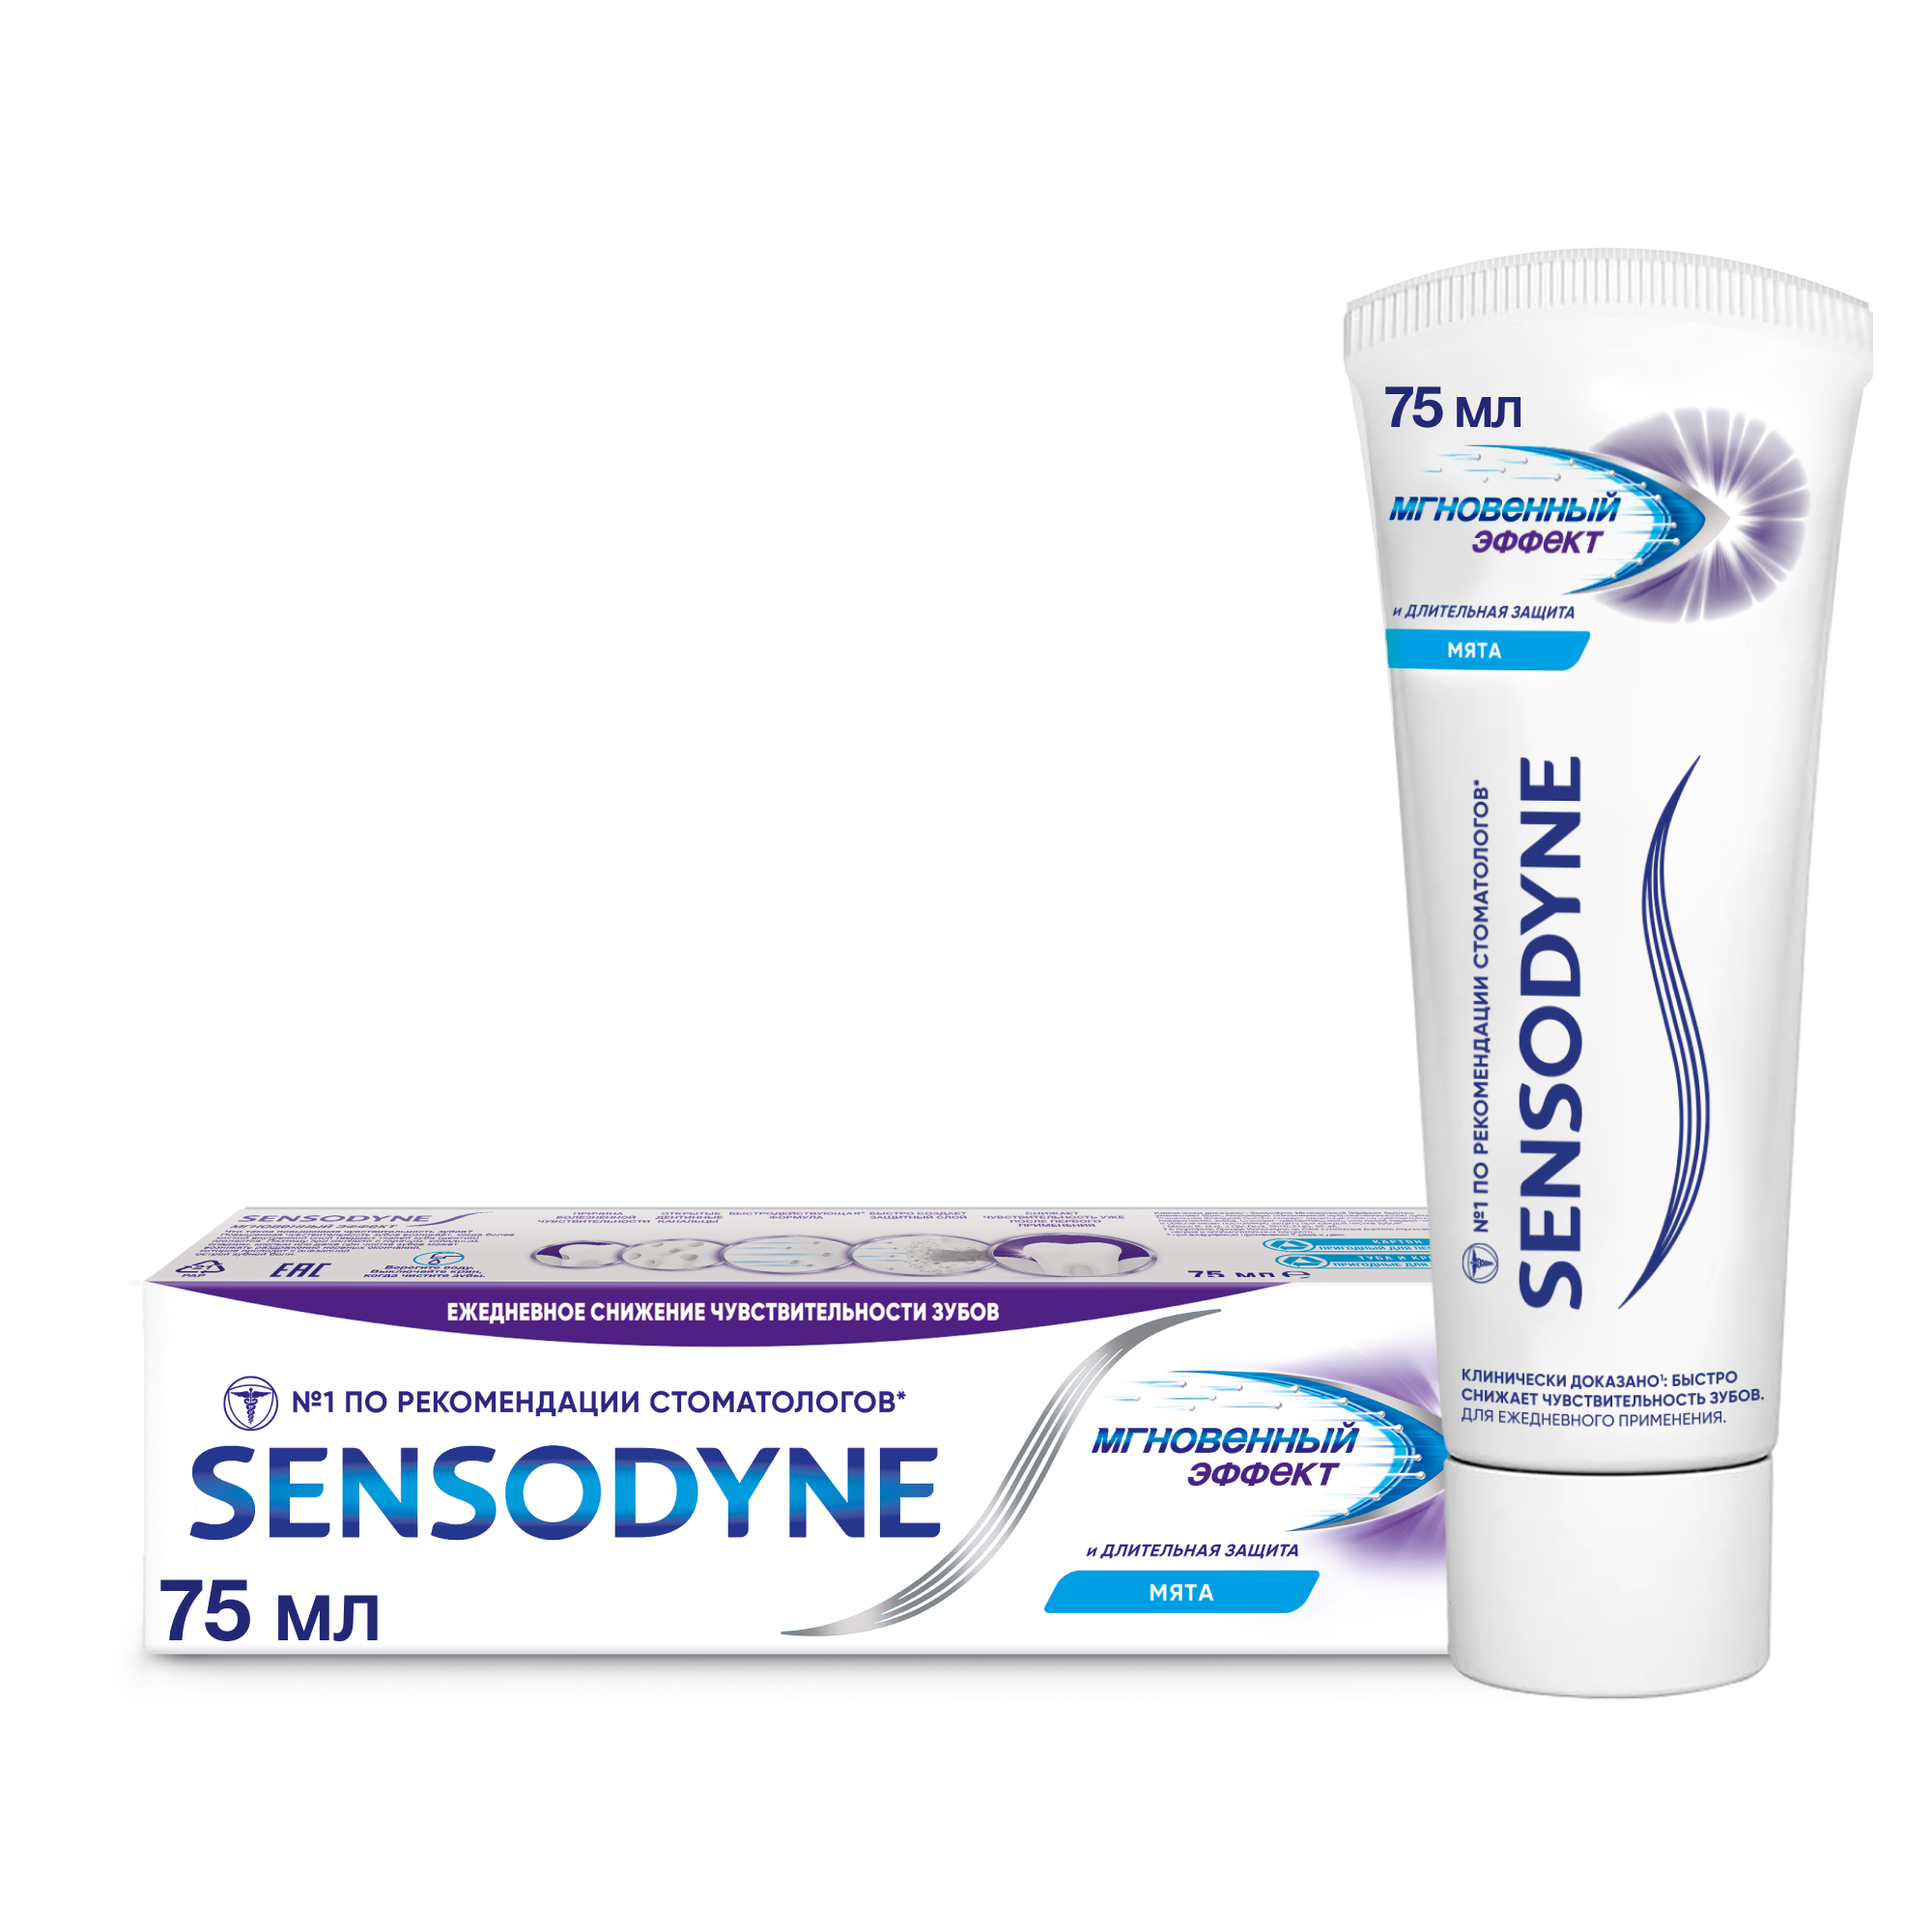 Зубная паста Sensodyne Мгновенный Эффект для чувствительных зубов с фтором, 75 мл зубная паста sensodyne